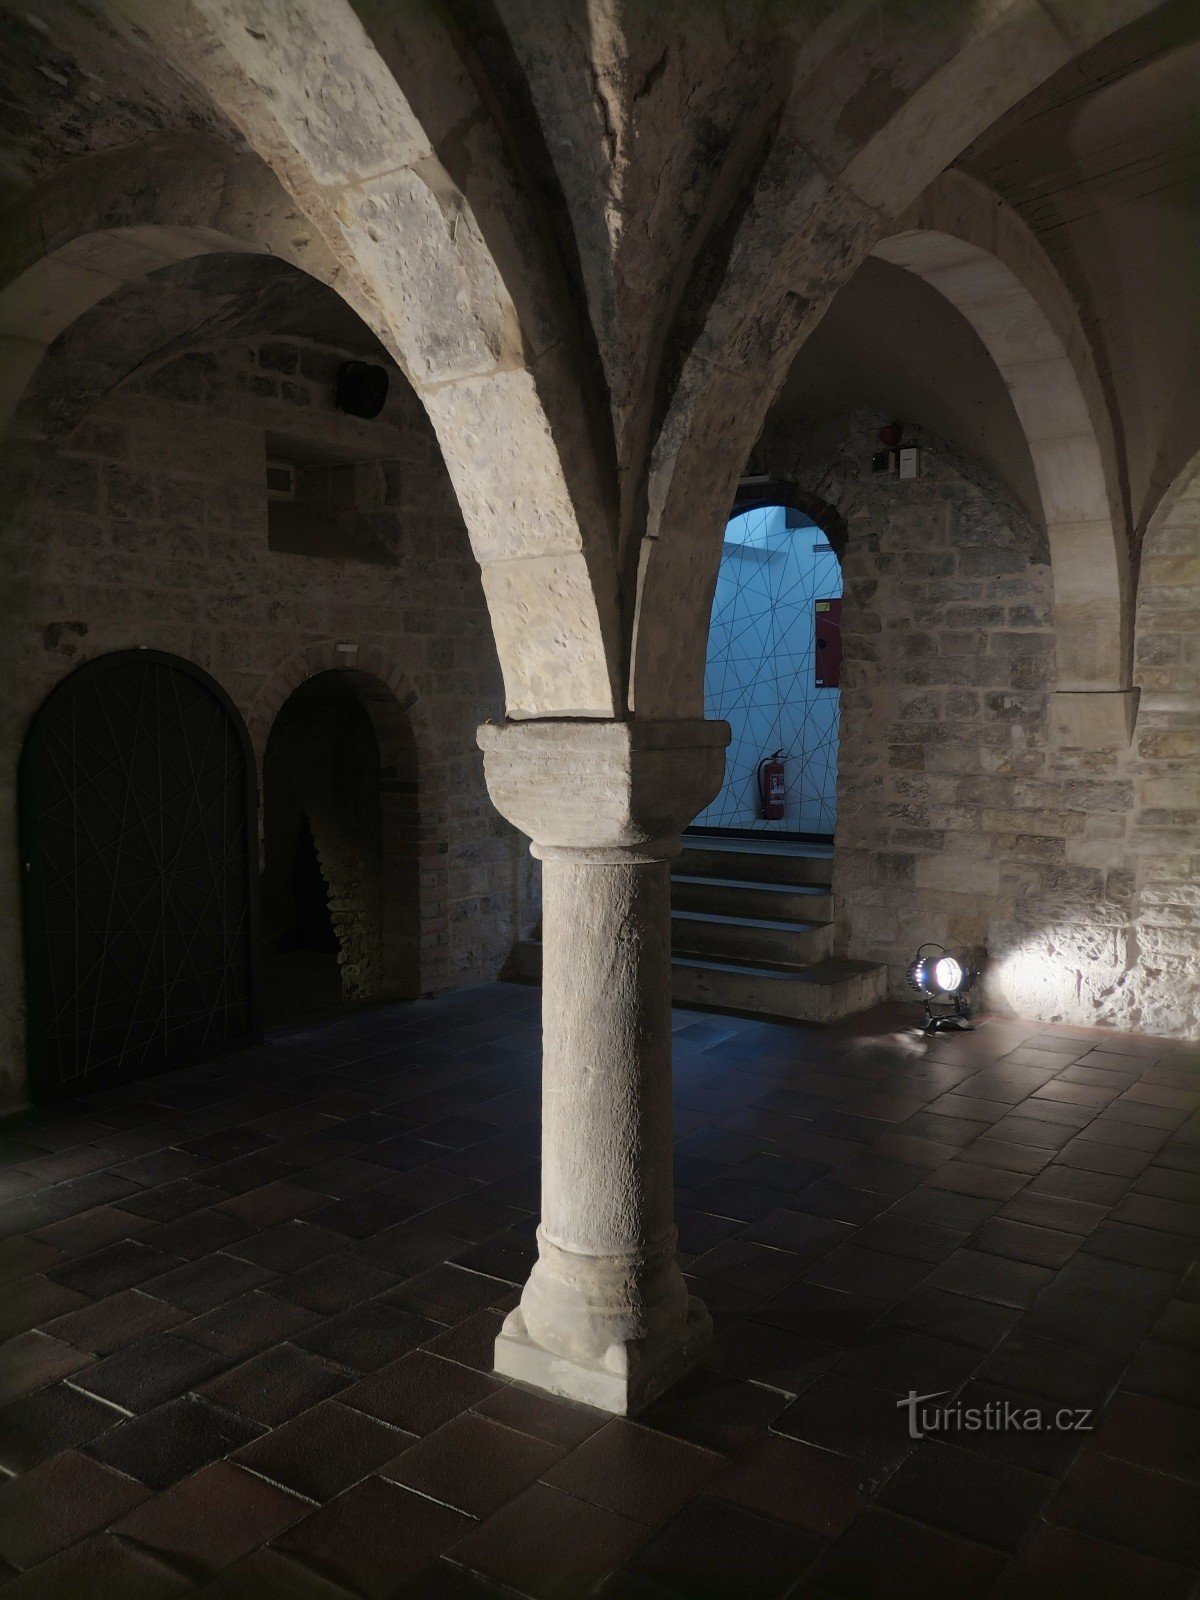 Prague (Staré Město) - tầng hầm theo kiểu Romanesque của ngôi nhà U Černého hada